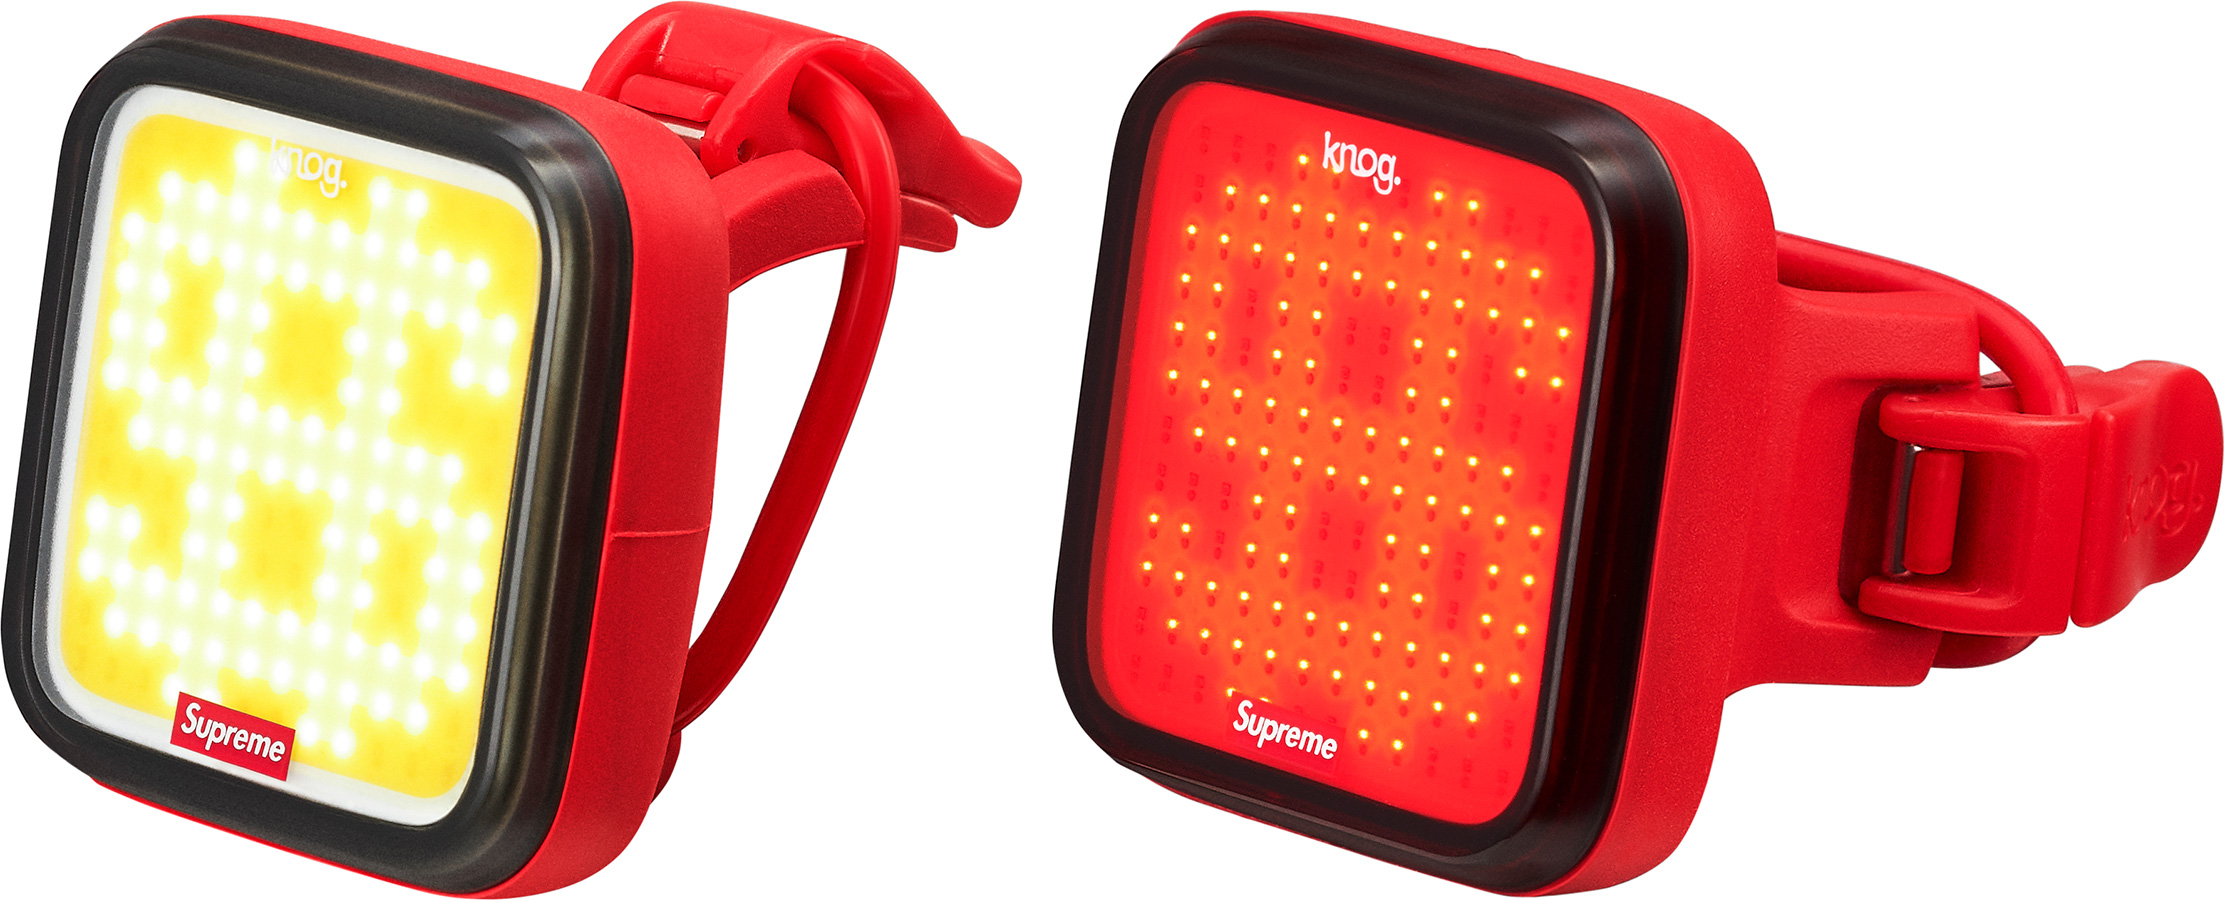 Supreme / Knog Blinder Bicycle Lights (Set of 2) | Supreme - SLN 